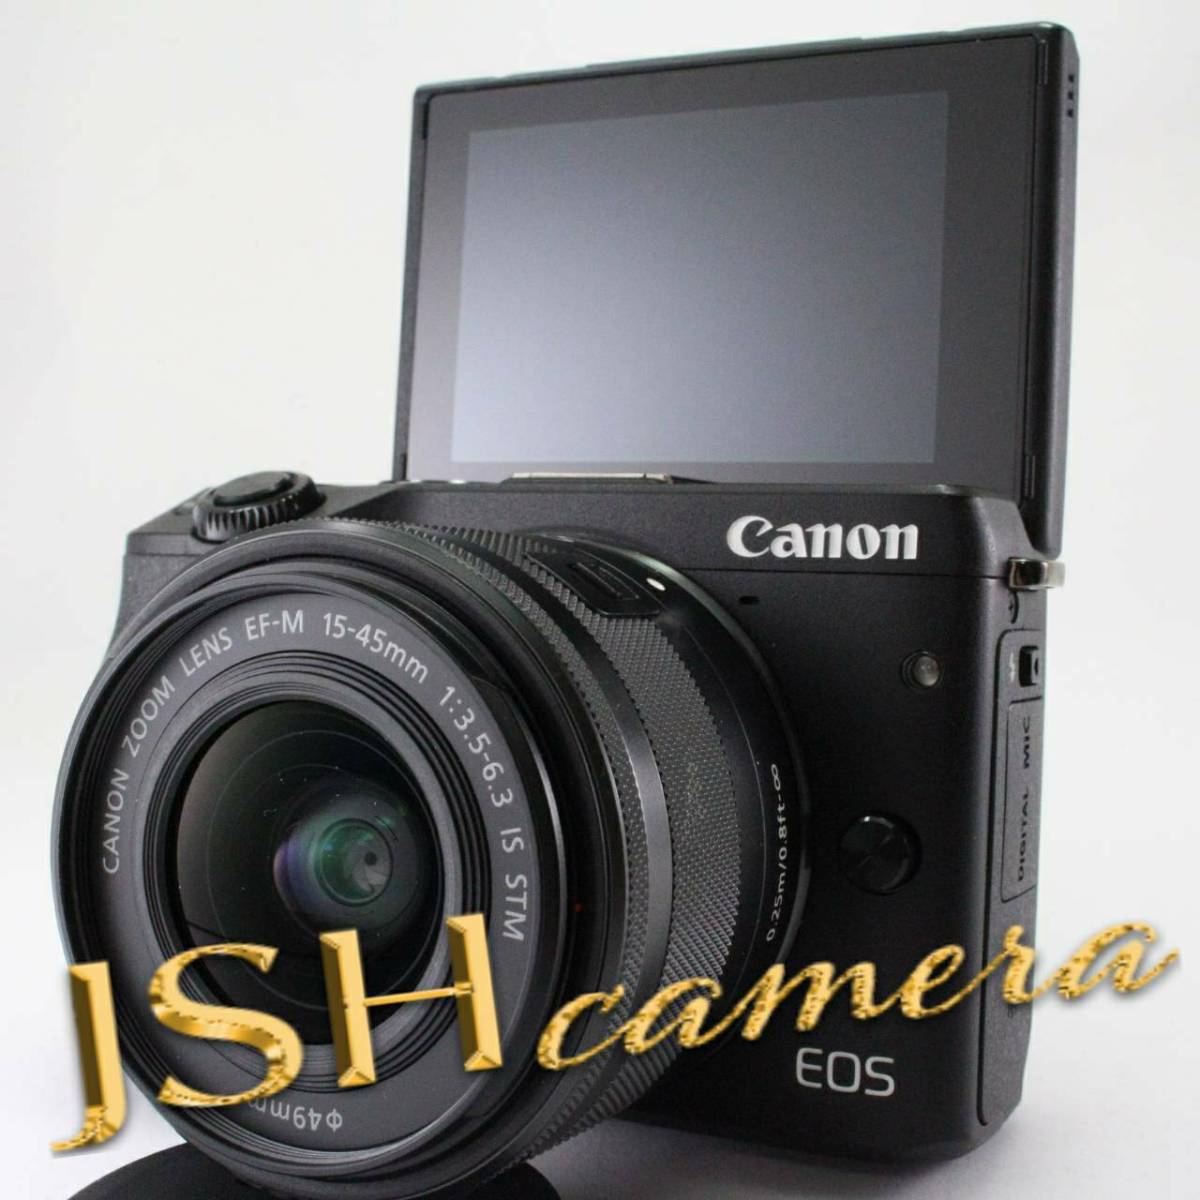 Canon EOS M3 EF-M15-45 IS STM レンズキットBK デジタルカメラ セール アウトレット店舗